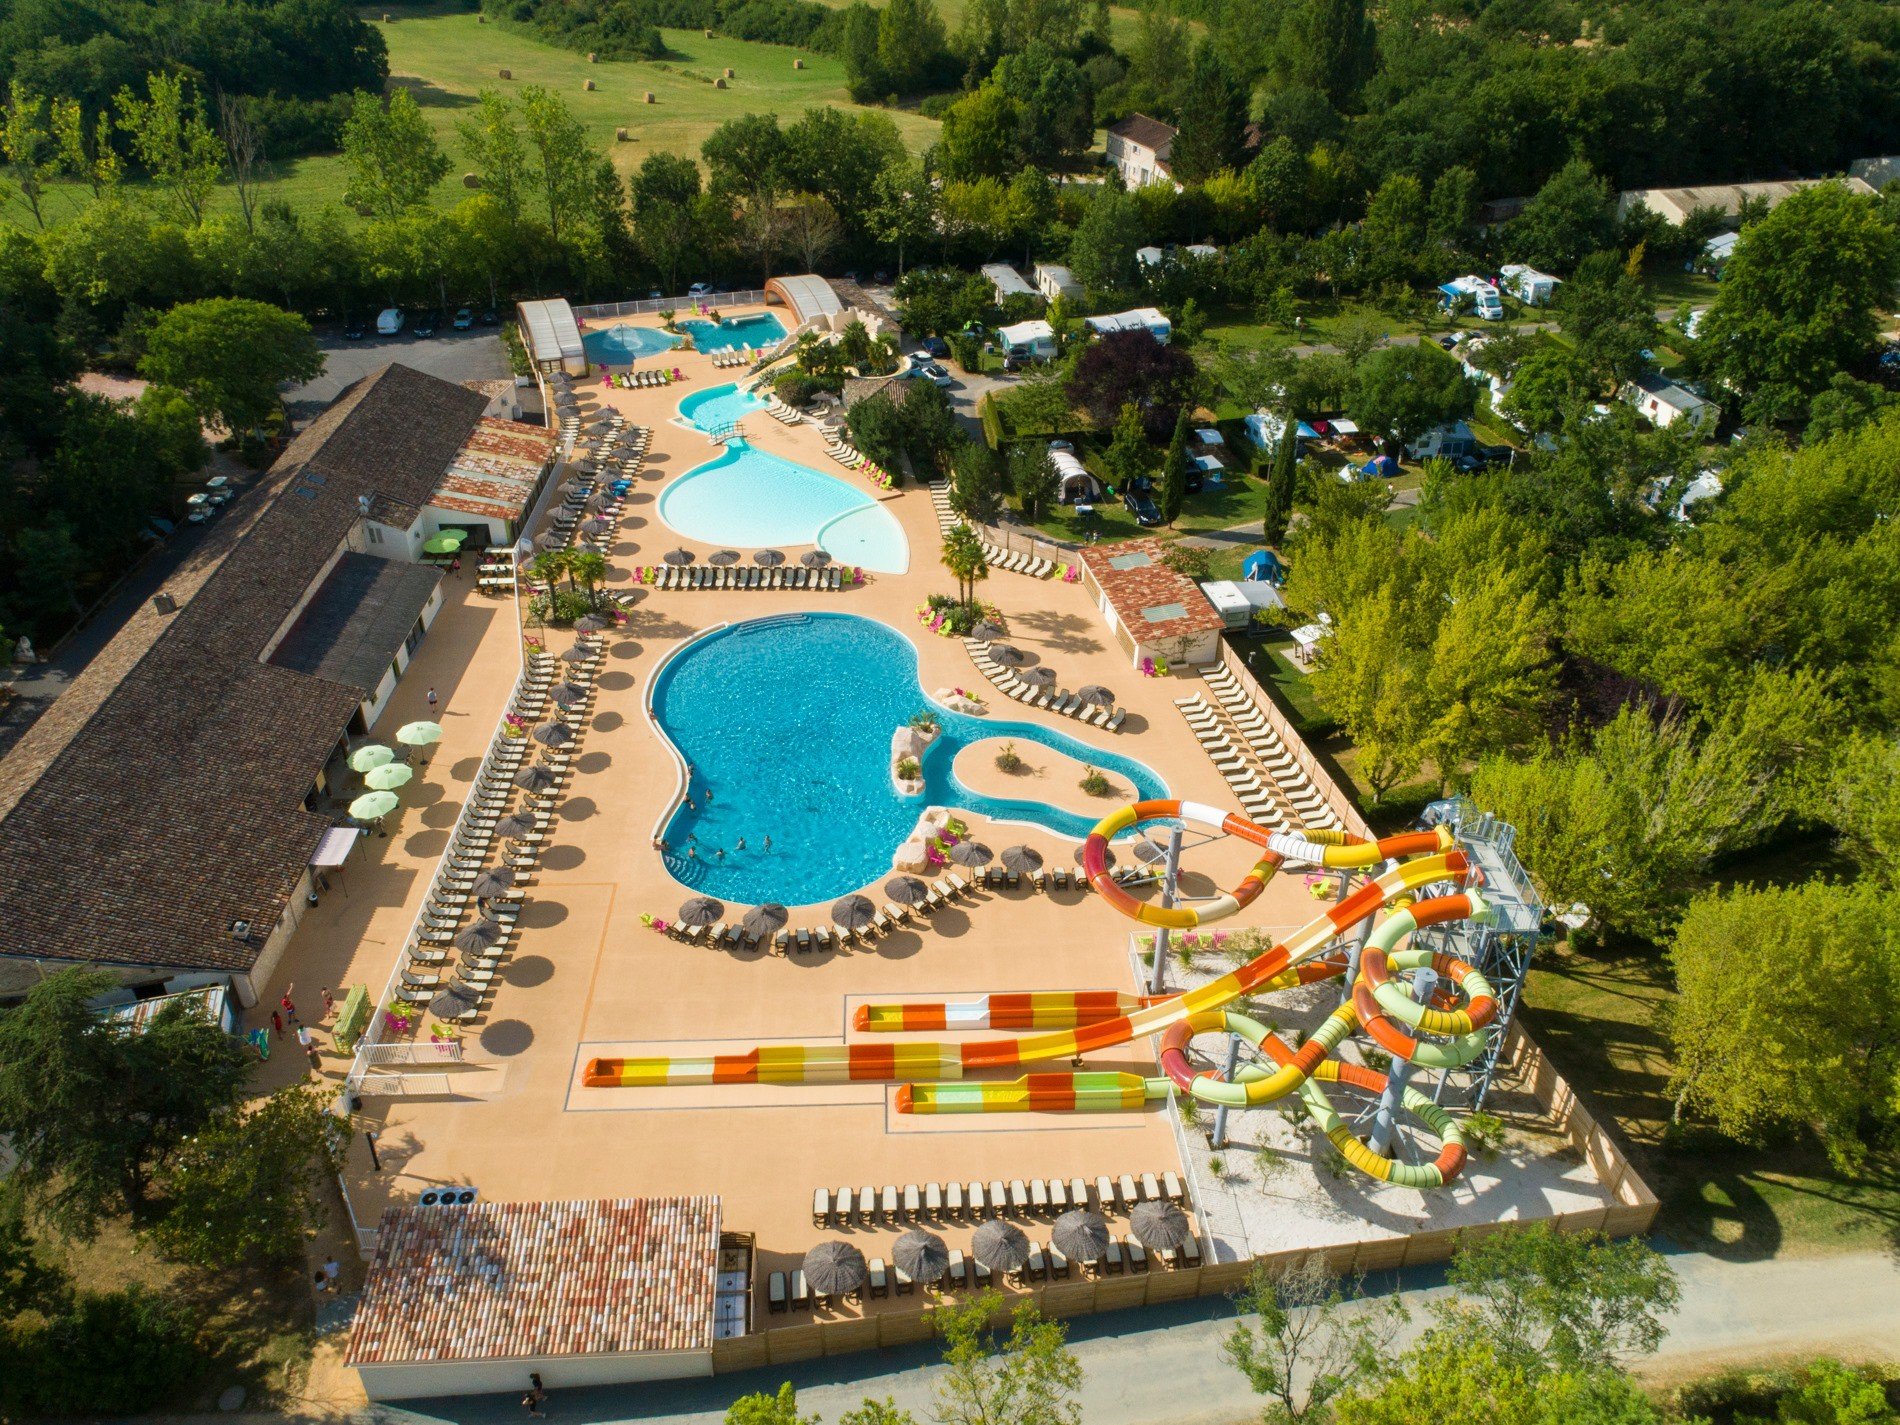 France - Sud Ouest - Villeréal - Camping Marvilla Parks Château de Fonrives 5*